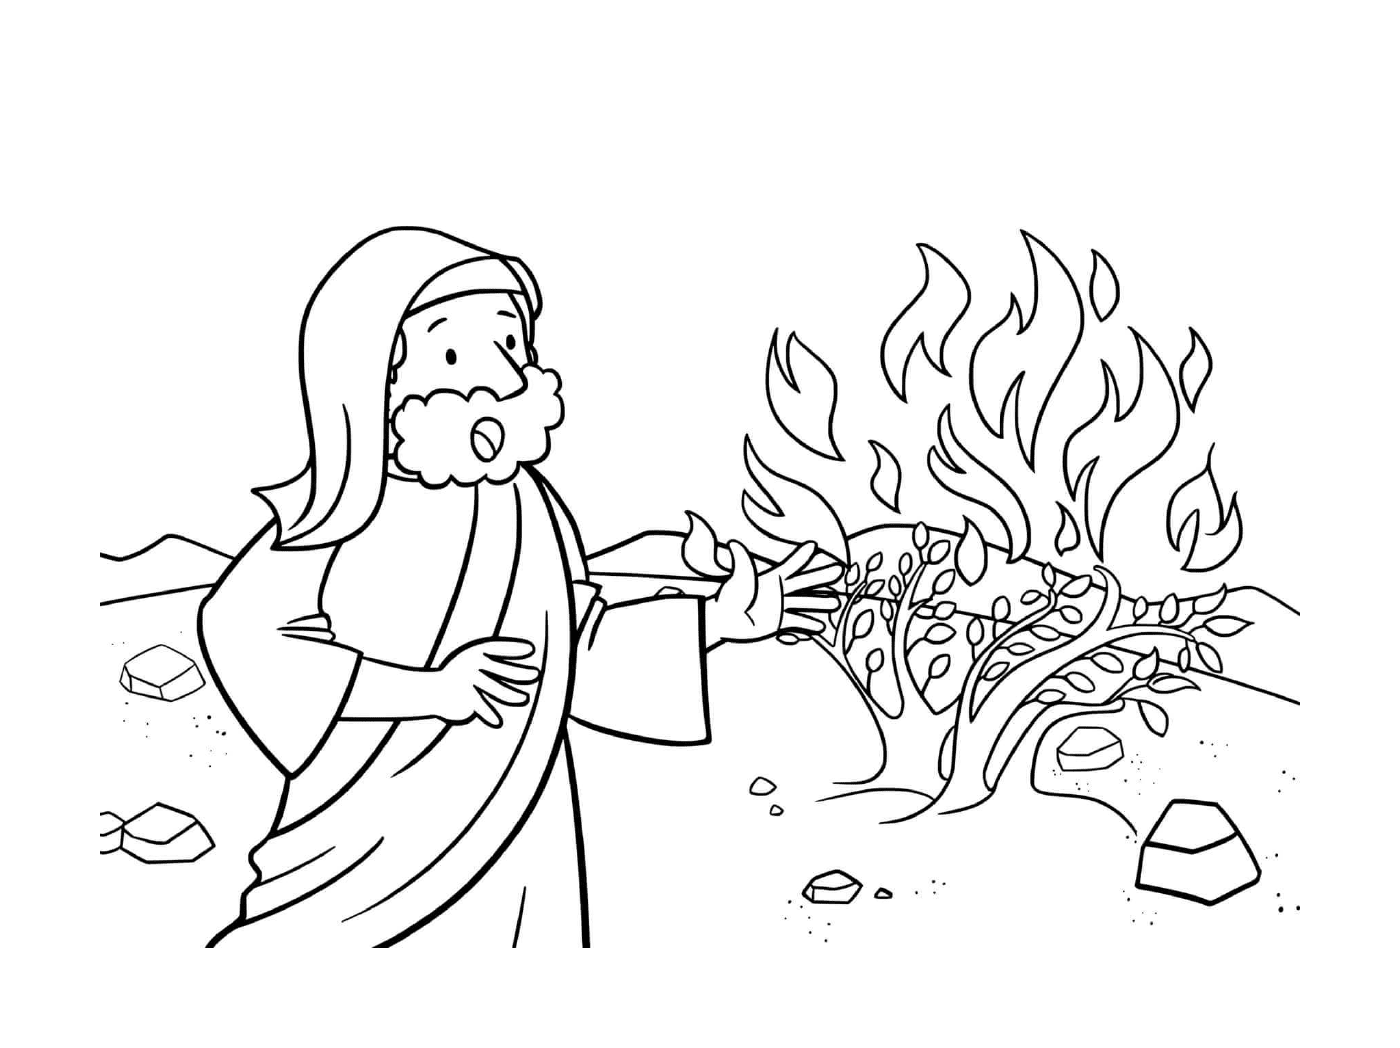  El hombre quemando un árbol 